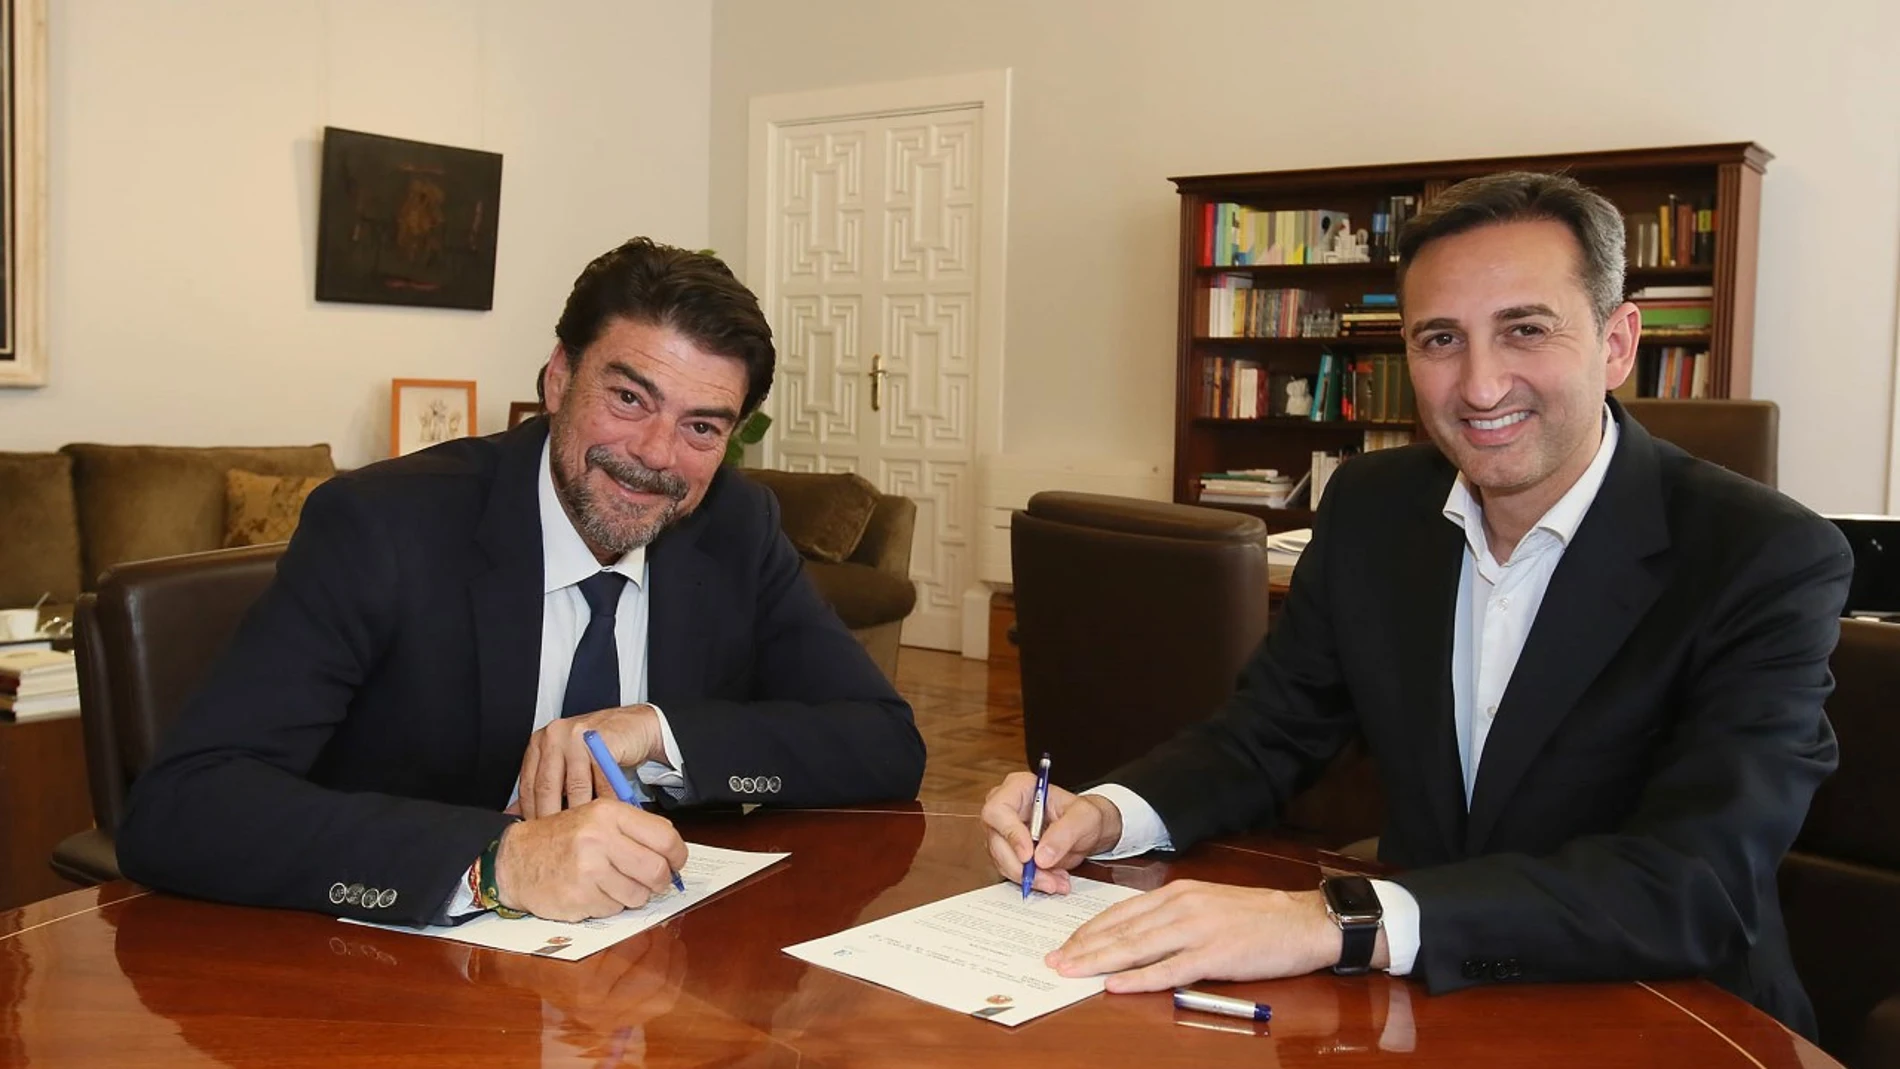 El presidente de la Diputación de Alicante, César Sánchez (derecha), acompañado por el alcalde de Alicante, Luis Barcala, en una imagen reciente